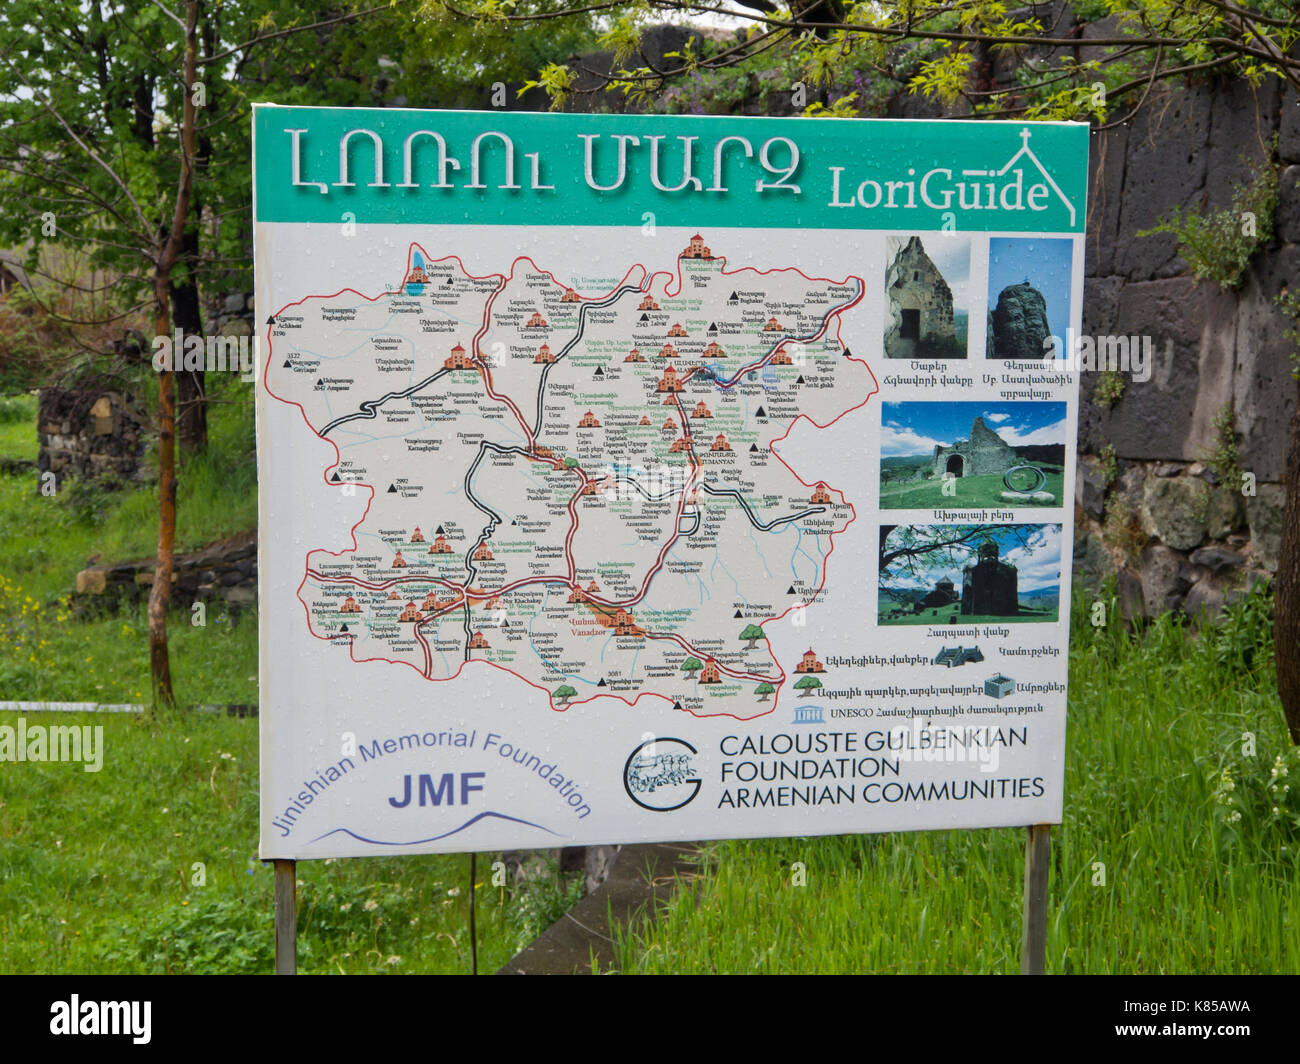 Póster de información, mapa de monumentos importantes en toda Armenia establecido en el monasterio de Haghpat Haghpatavank, mostrando bases de apoyo Foto de stock